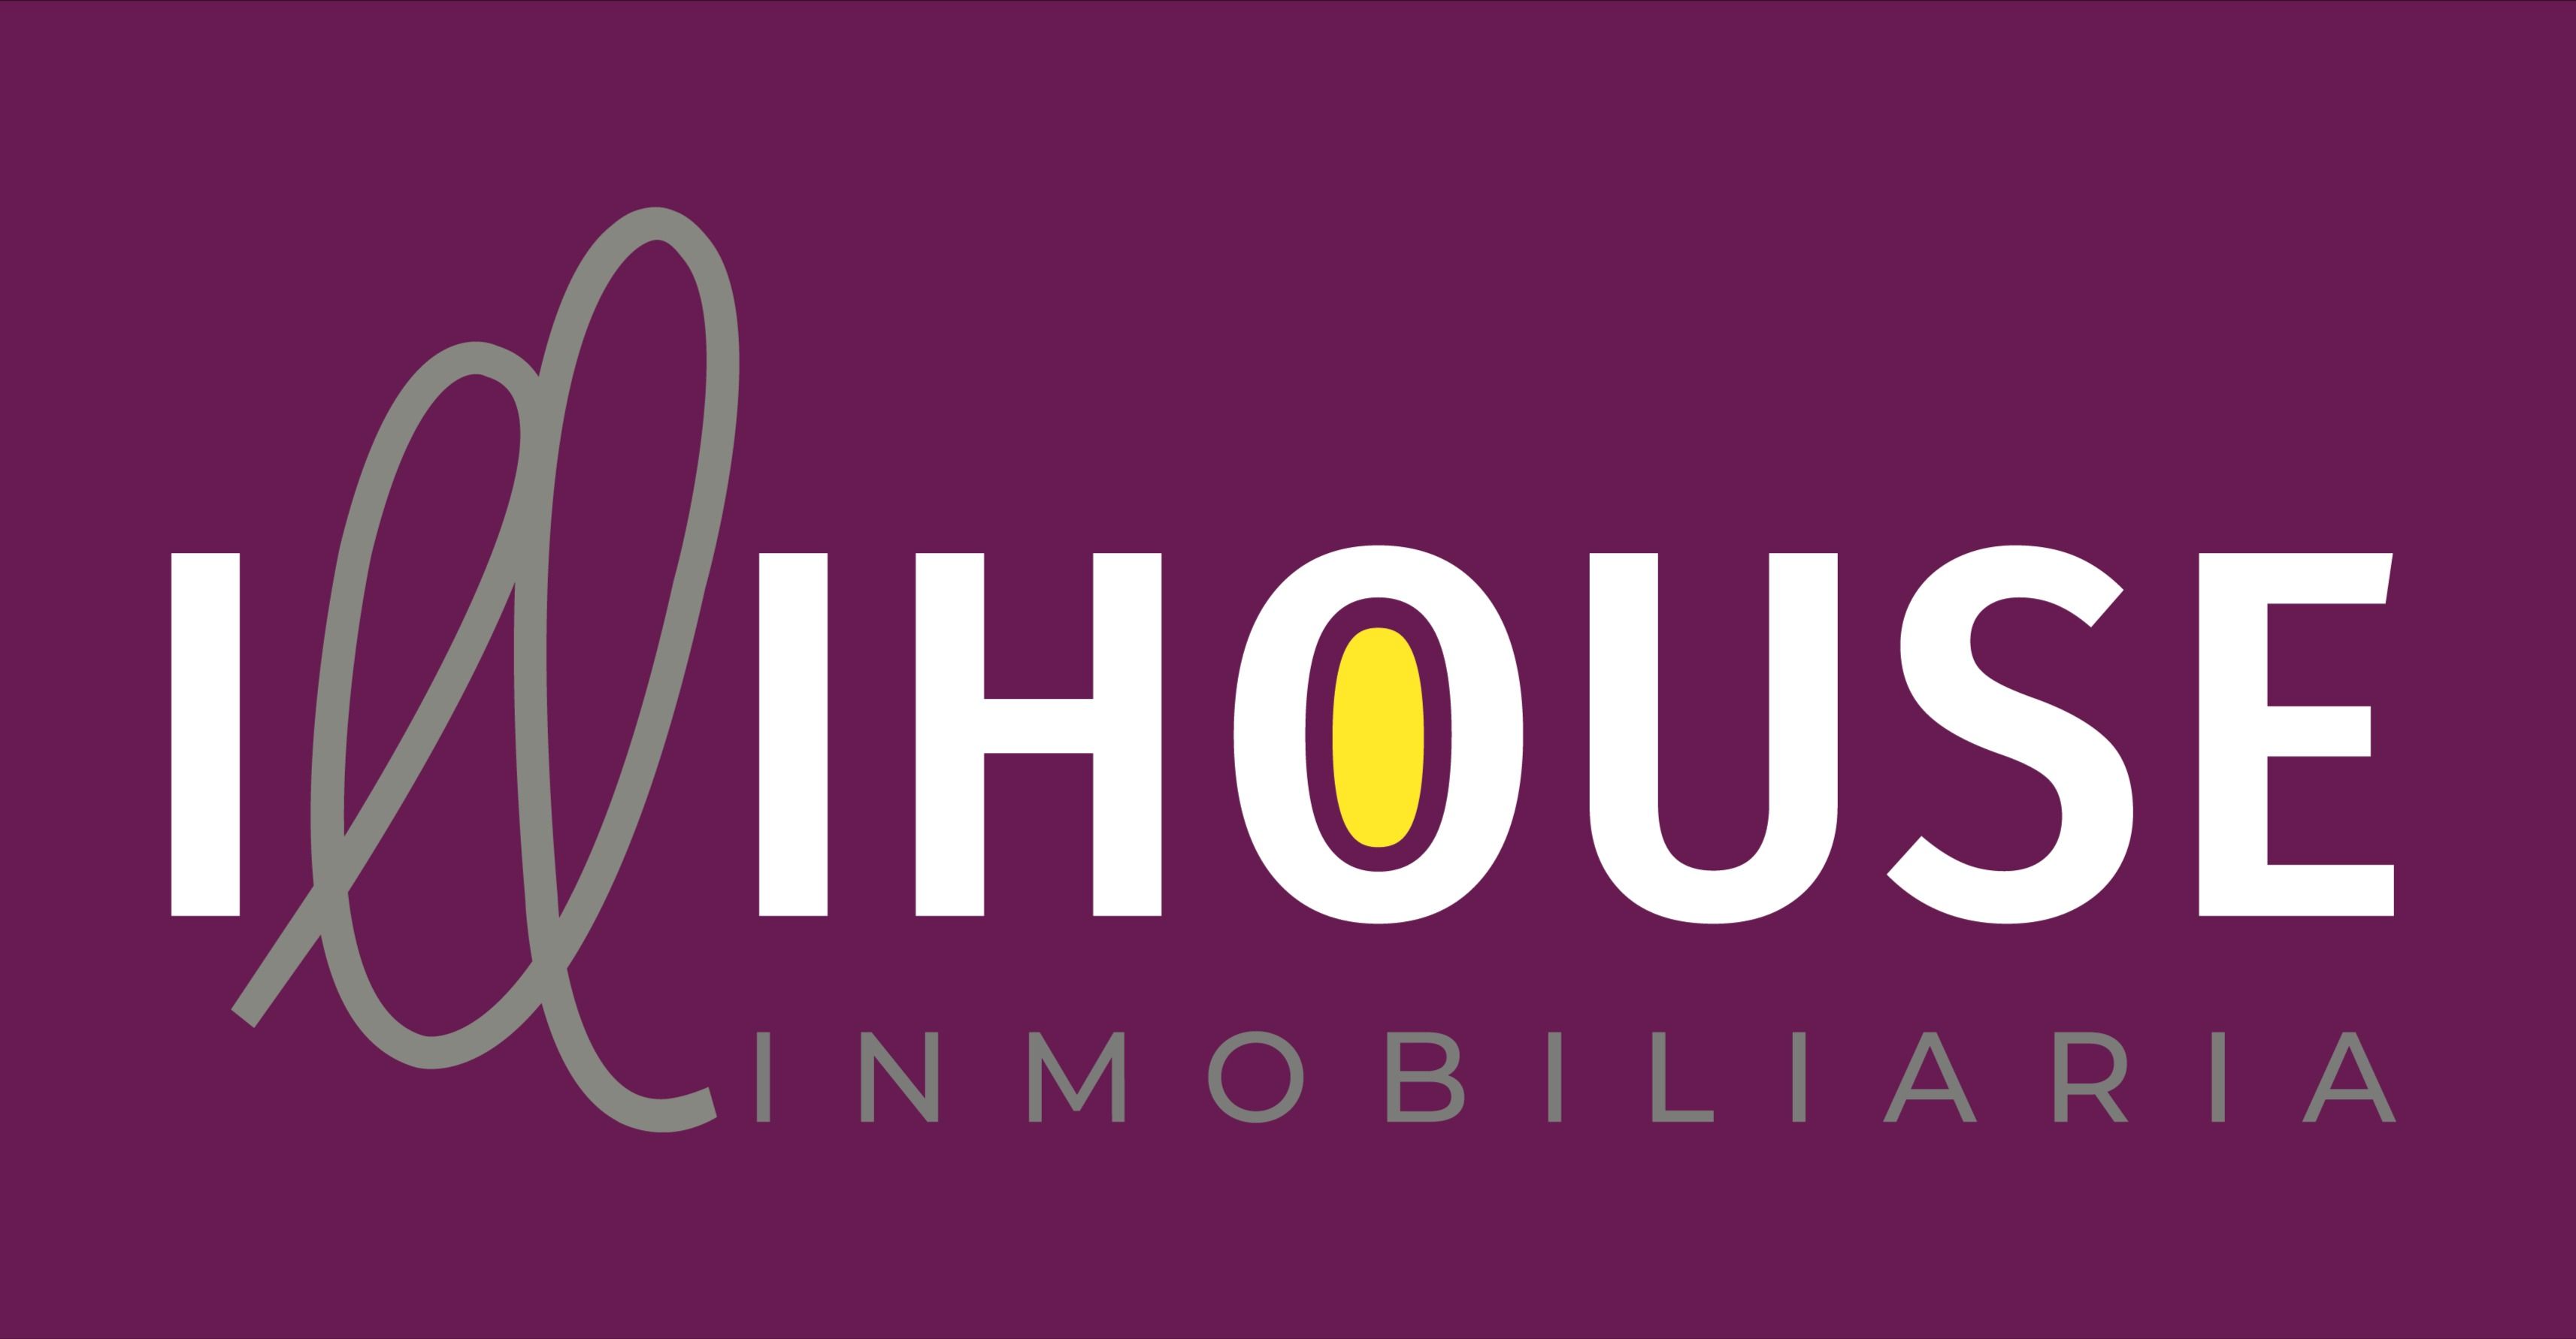 Illihouse Promociones Inmobiliarias